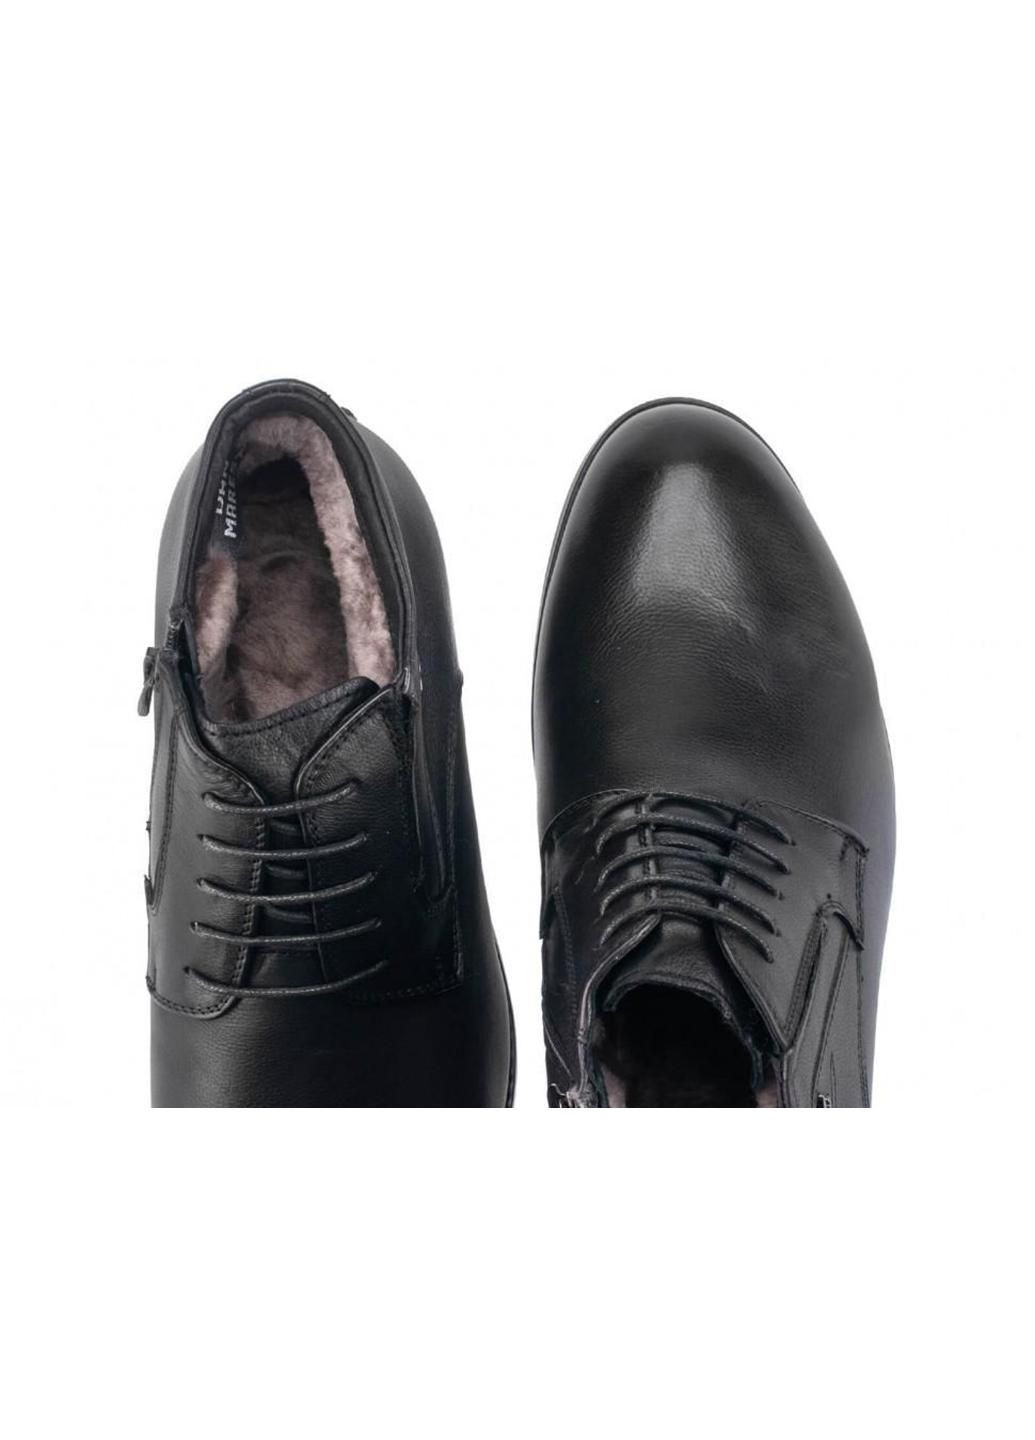 Черные зимние ботинки 7194153 цвет черный Dan Marest